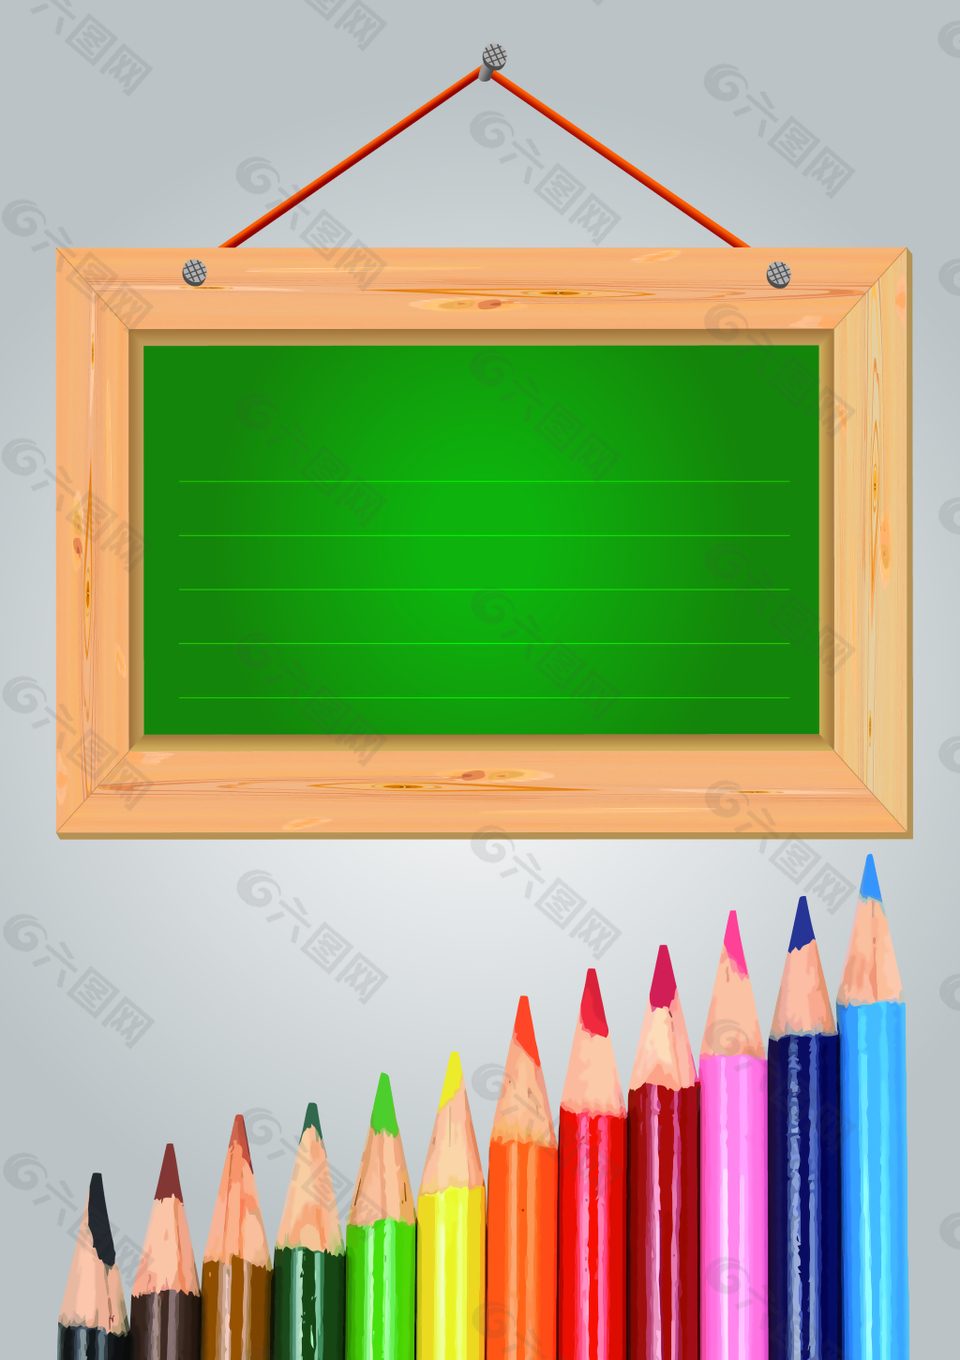 矢量彩色铅笔木牌教育背景素材